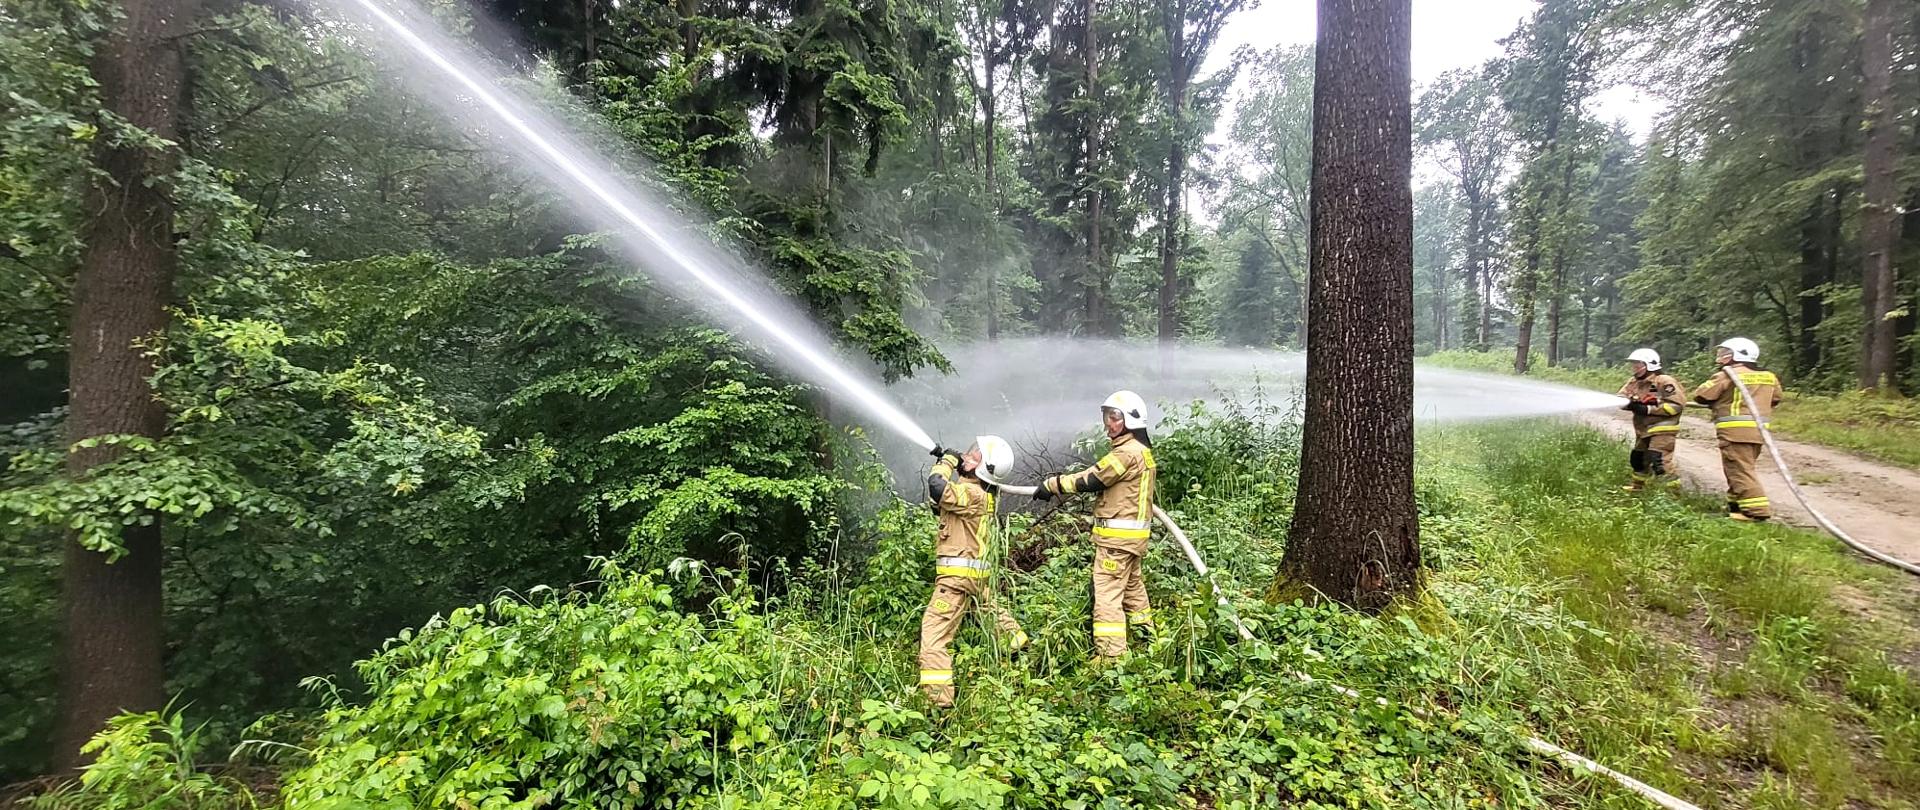 Na zdjęciu widać 4 strażaków w białych hełmach i żółtym mundurze, podają dwa prądy wody , rozdziela ich pień drzewa w tle widoczny jest las .